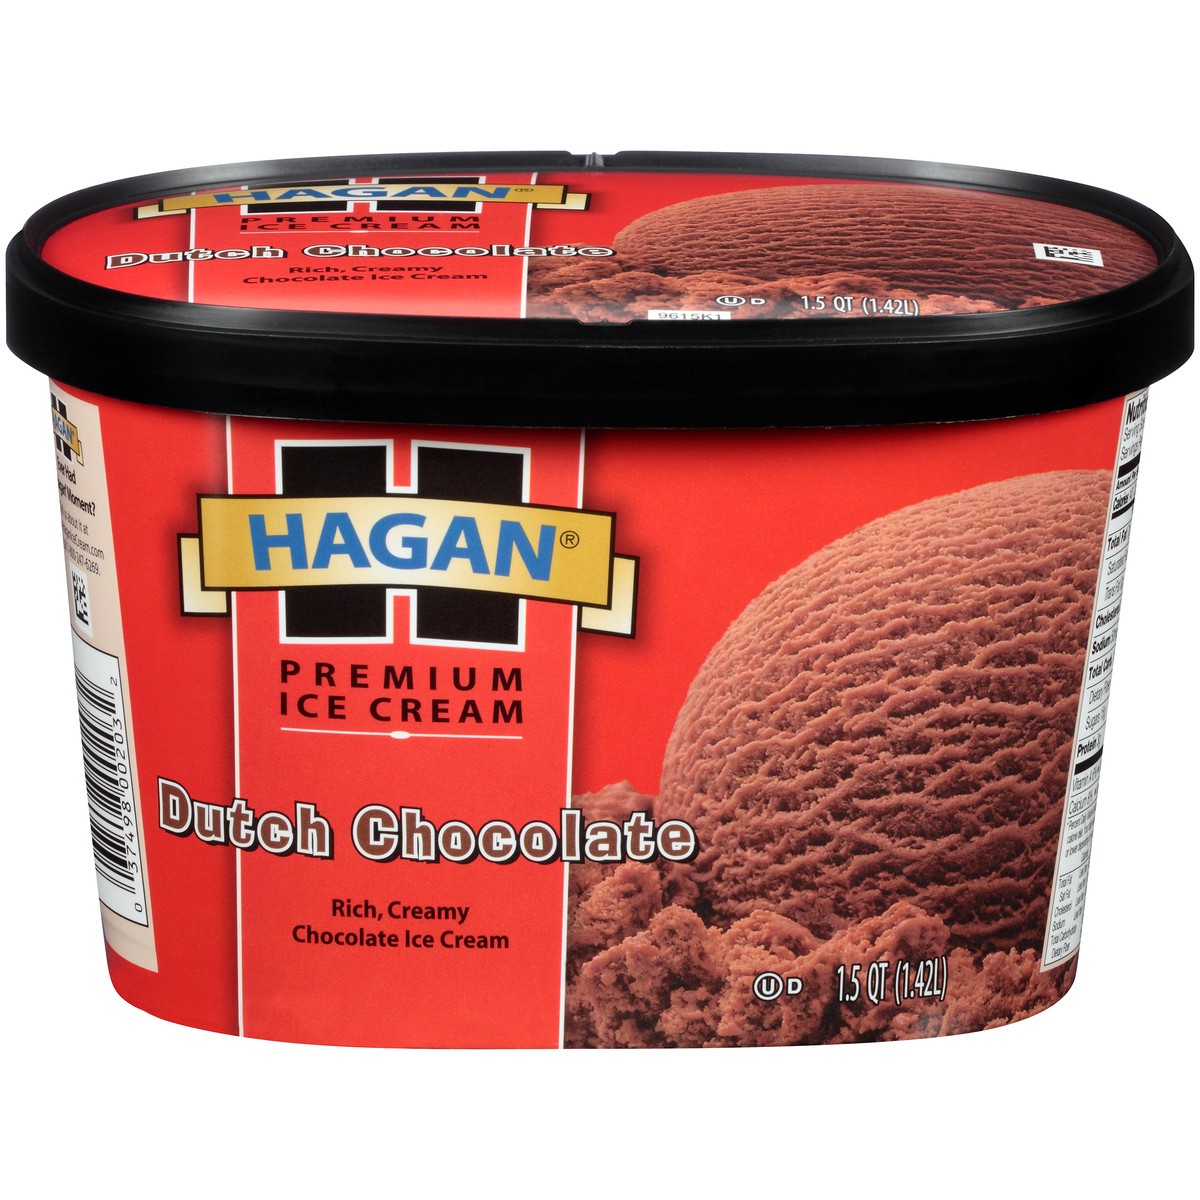 slide 1 of 10, Hagan Dutch Chocolate Premium Ice Cream 1.5 qt. Tub, 1.42 liter